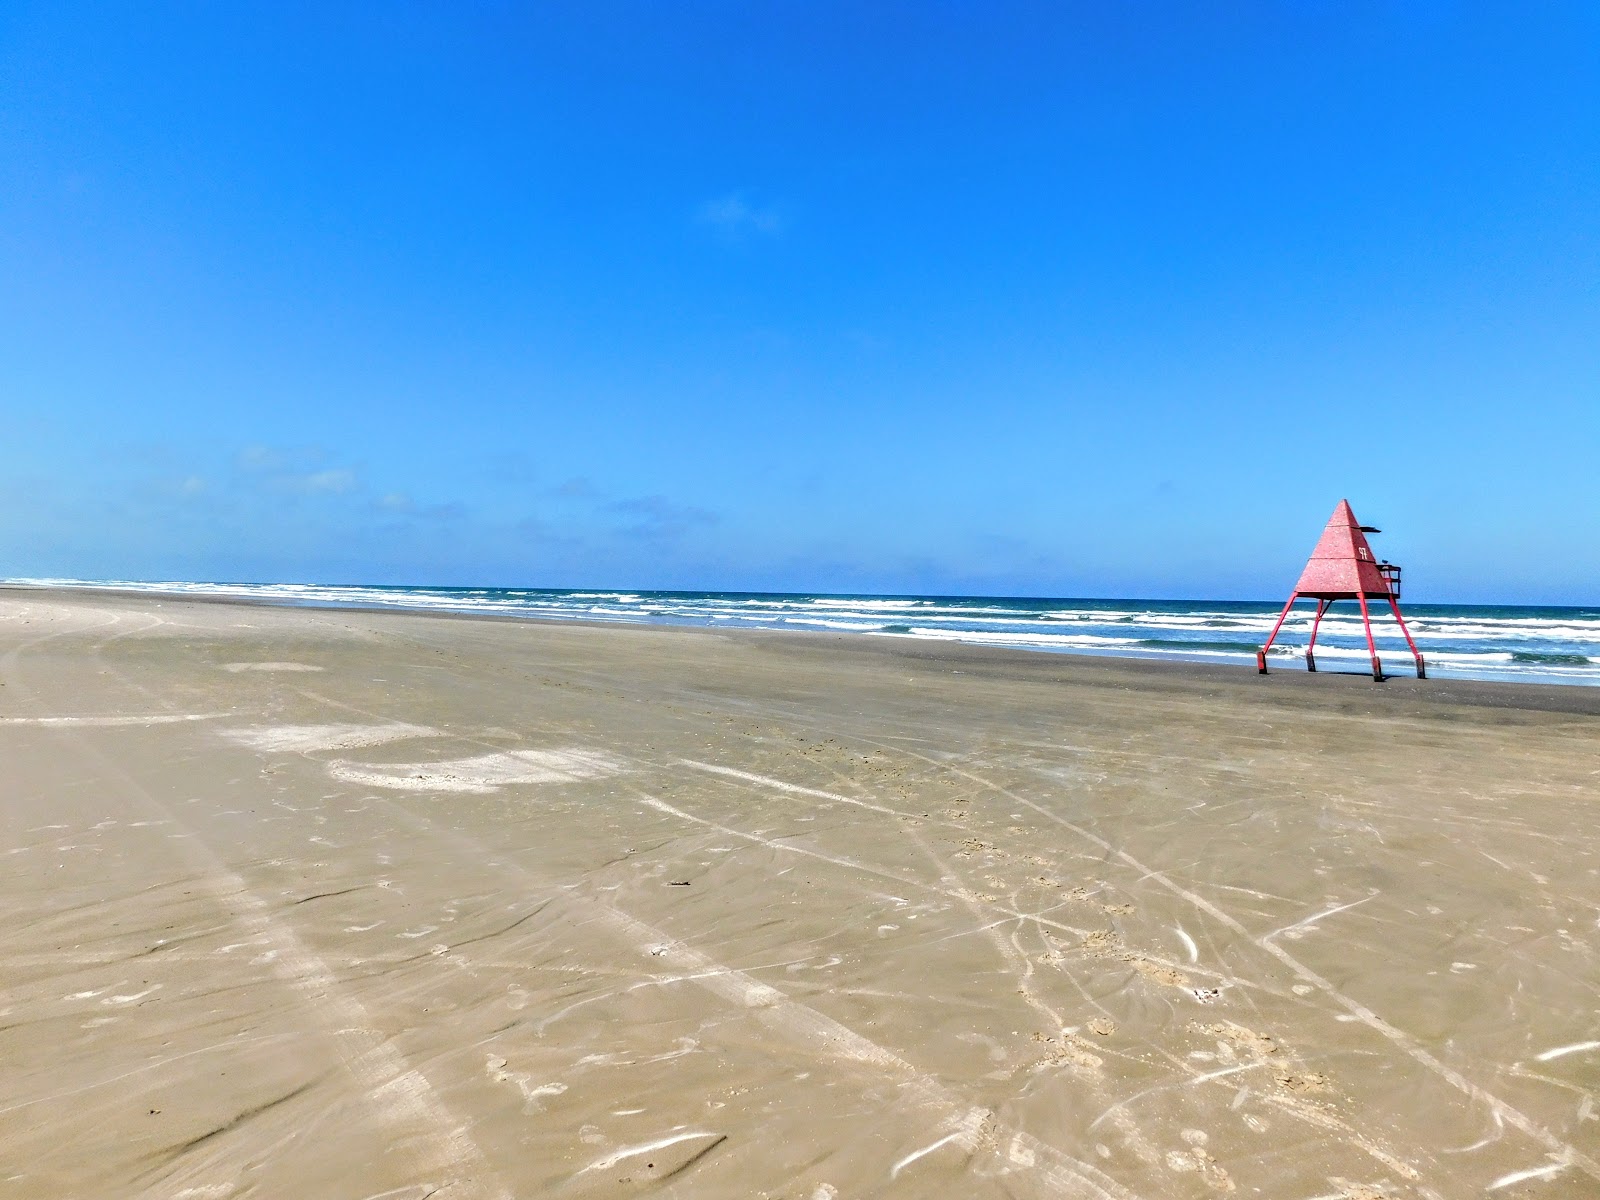 Praia Maristela'in fotoğrafı geniş plaj ile birlikte